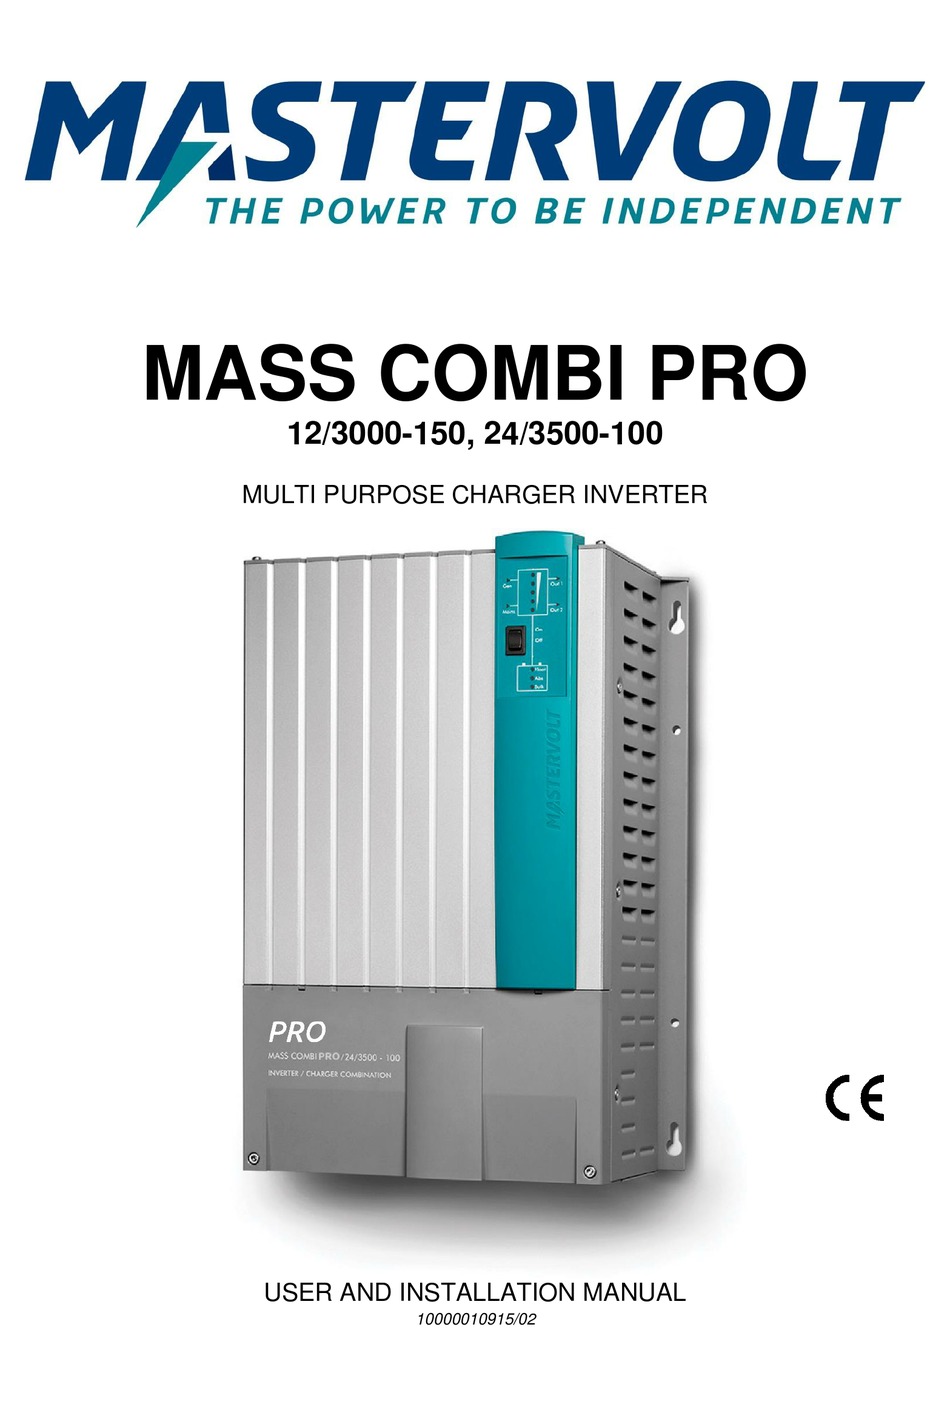 Mastervolt Mass Combi Pro 12/3000-150 Ladegerät Wechselrichter Charger Inverter